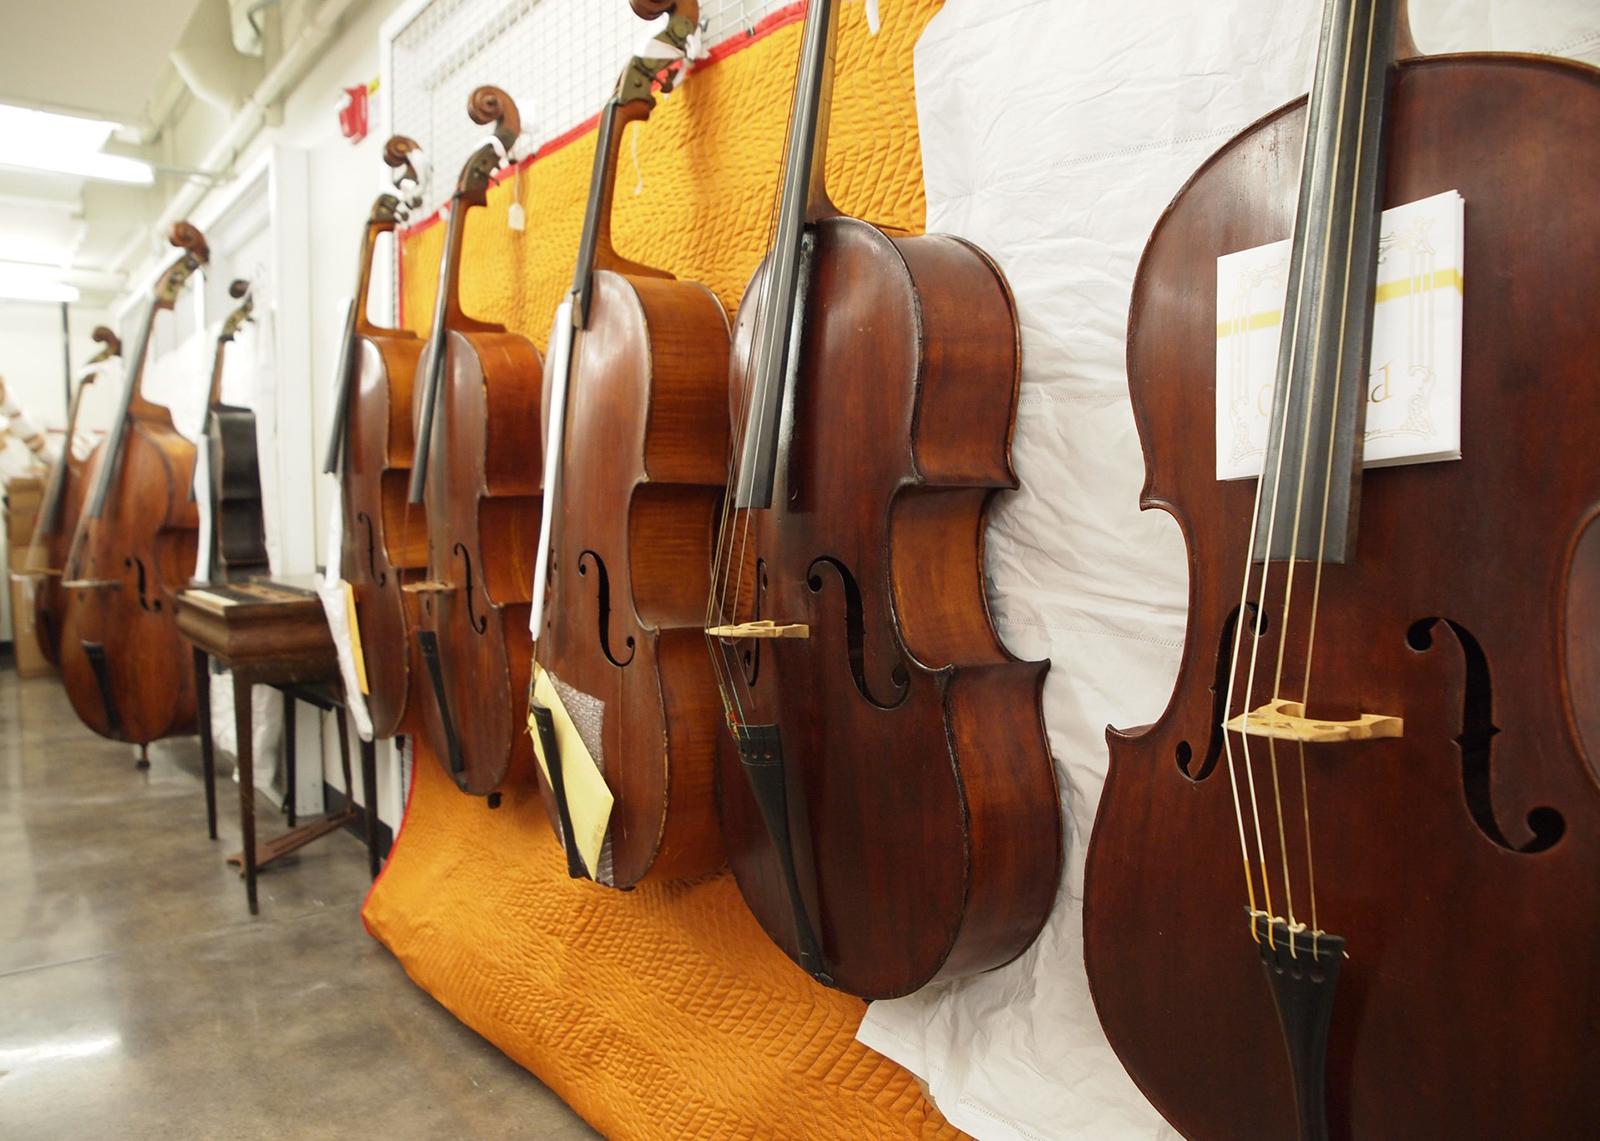 Several cellos are exhibited along a corridor wall.